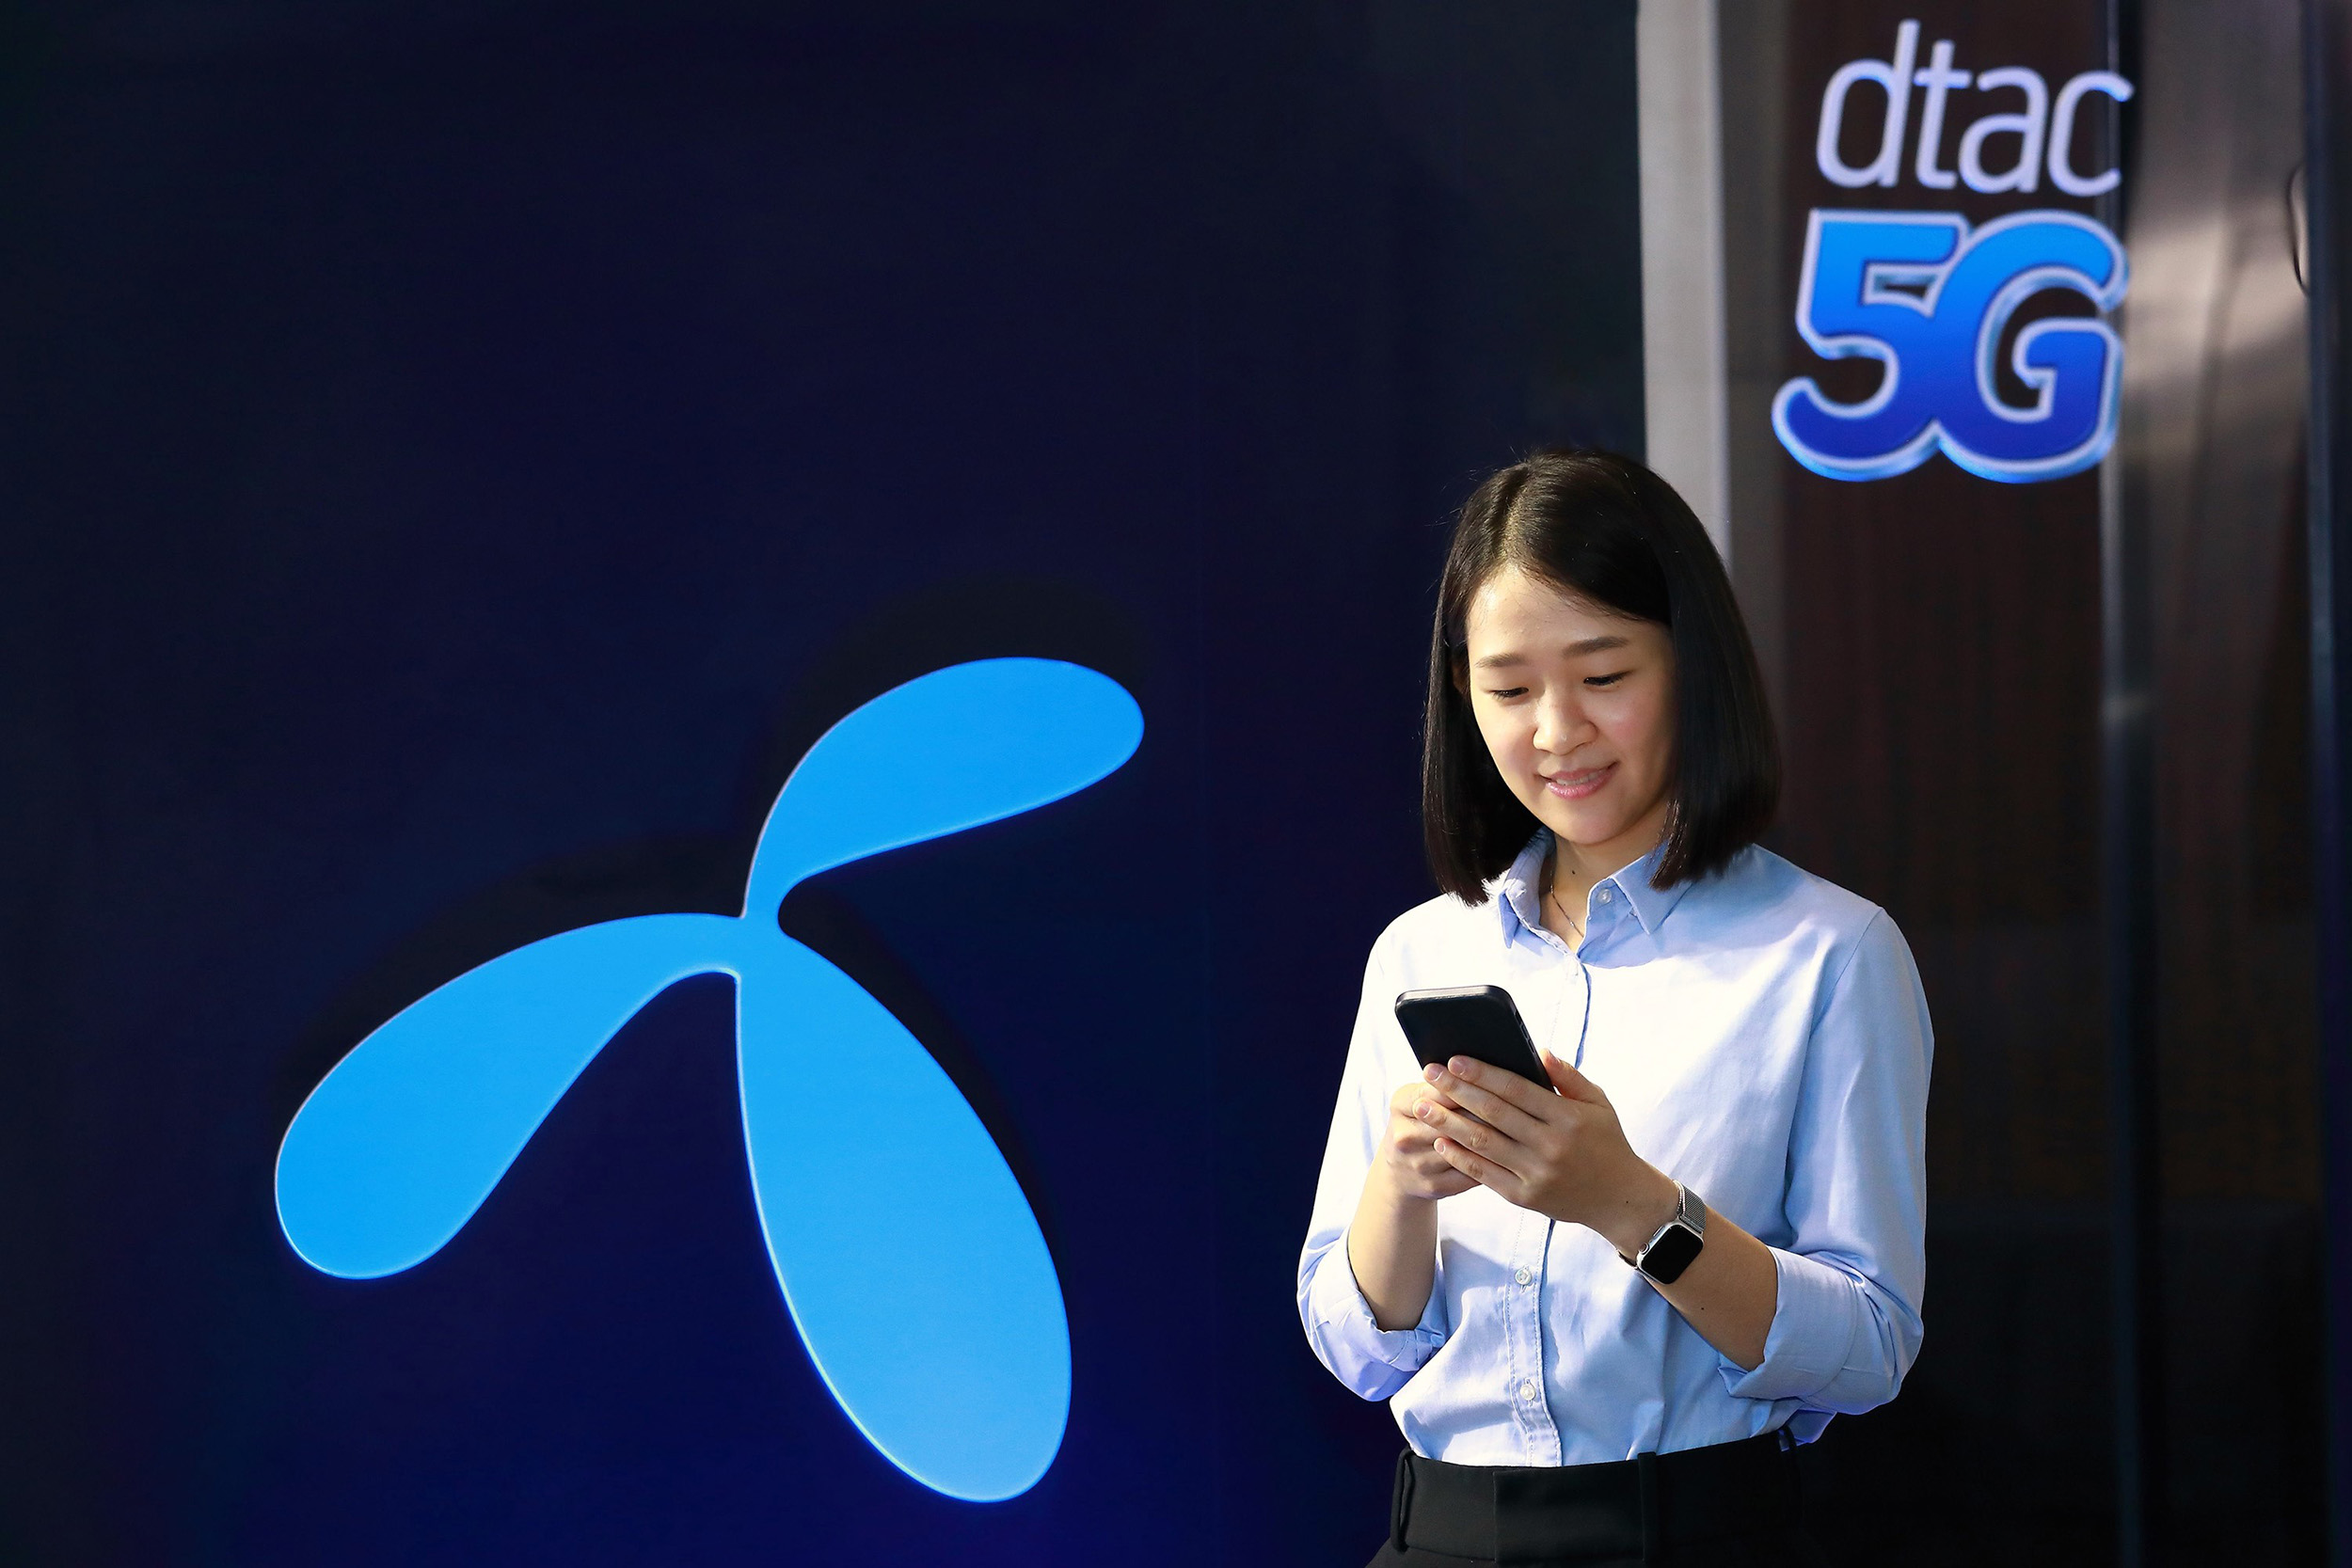 ดีแทค 5G พร้อมใช้ทั่วไทย 77 จังหวัด หนุนเศรษฐกิจฟื้นตัว จัดสมาร์ทโฟน 5G คุ้มราคาพร้อมแพ็กเกจ dtac GO+ 5G เพื่อลูกค้า